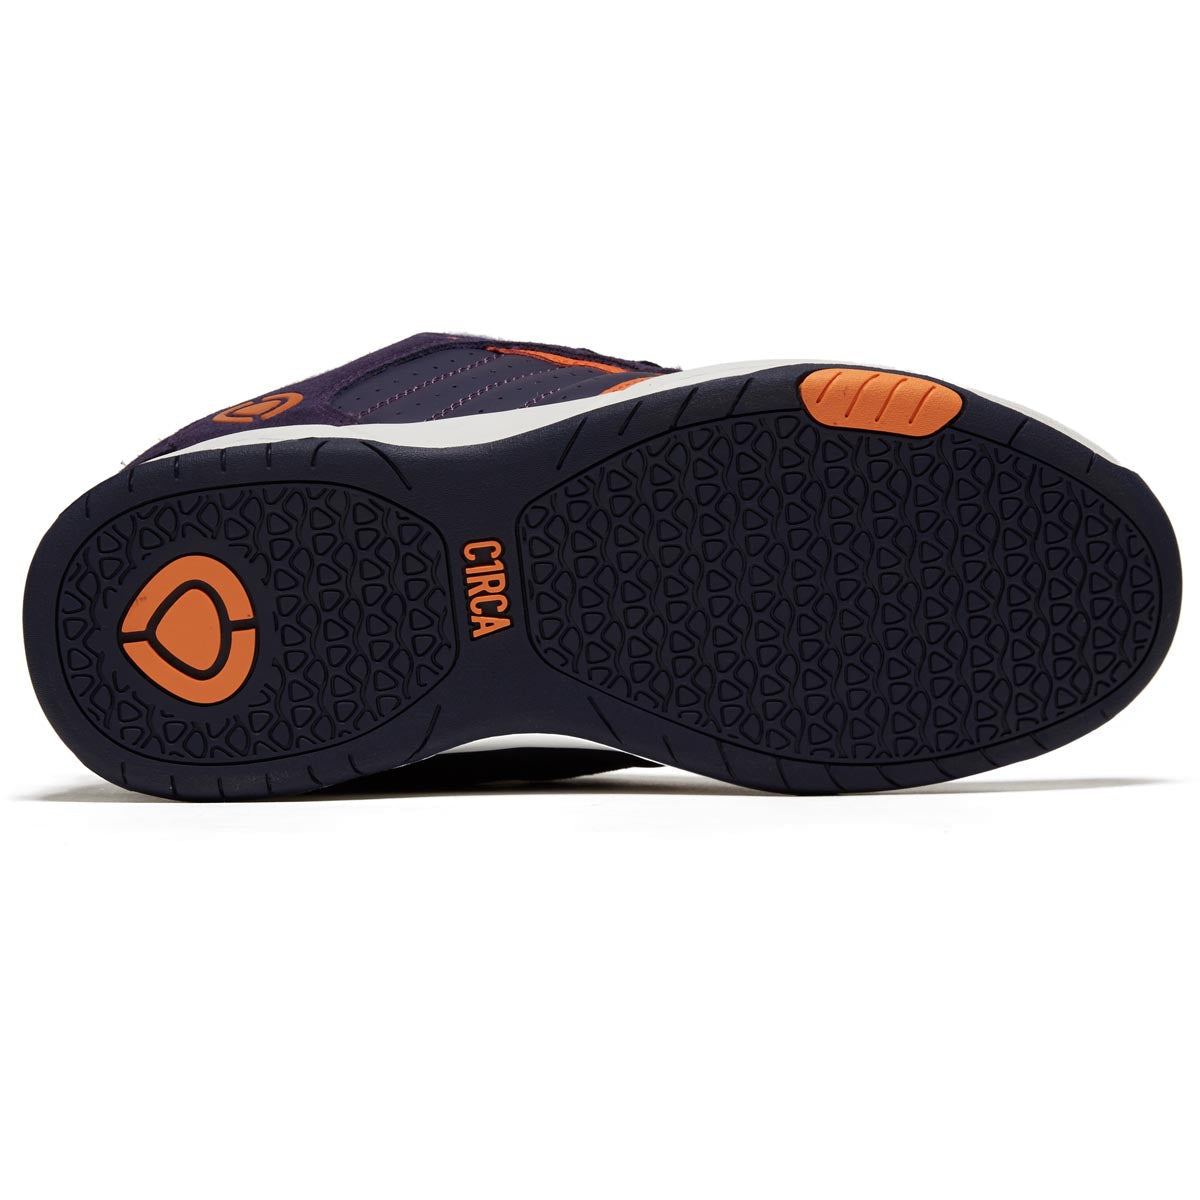 C1rca Cx201r Shoes - Navy/Orange image 4